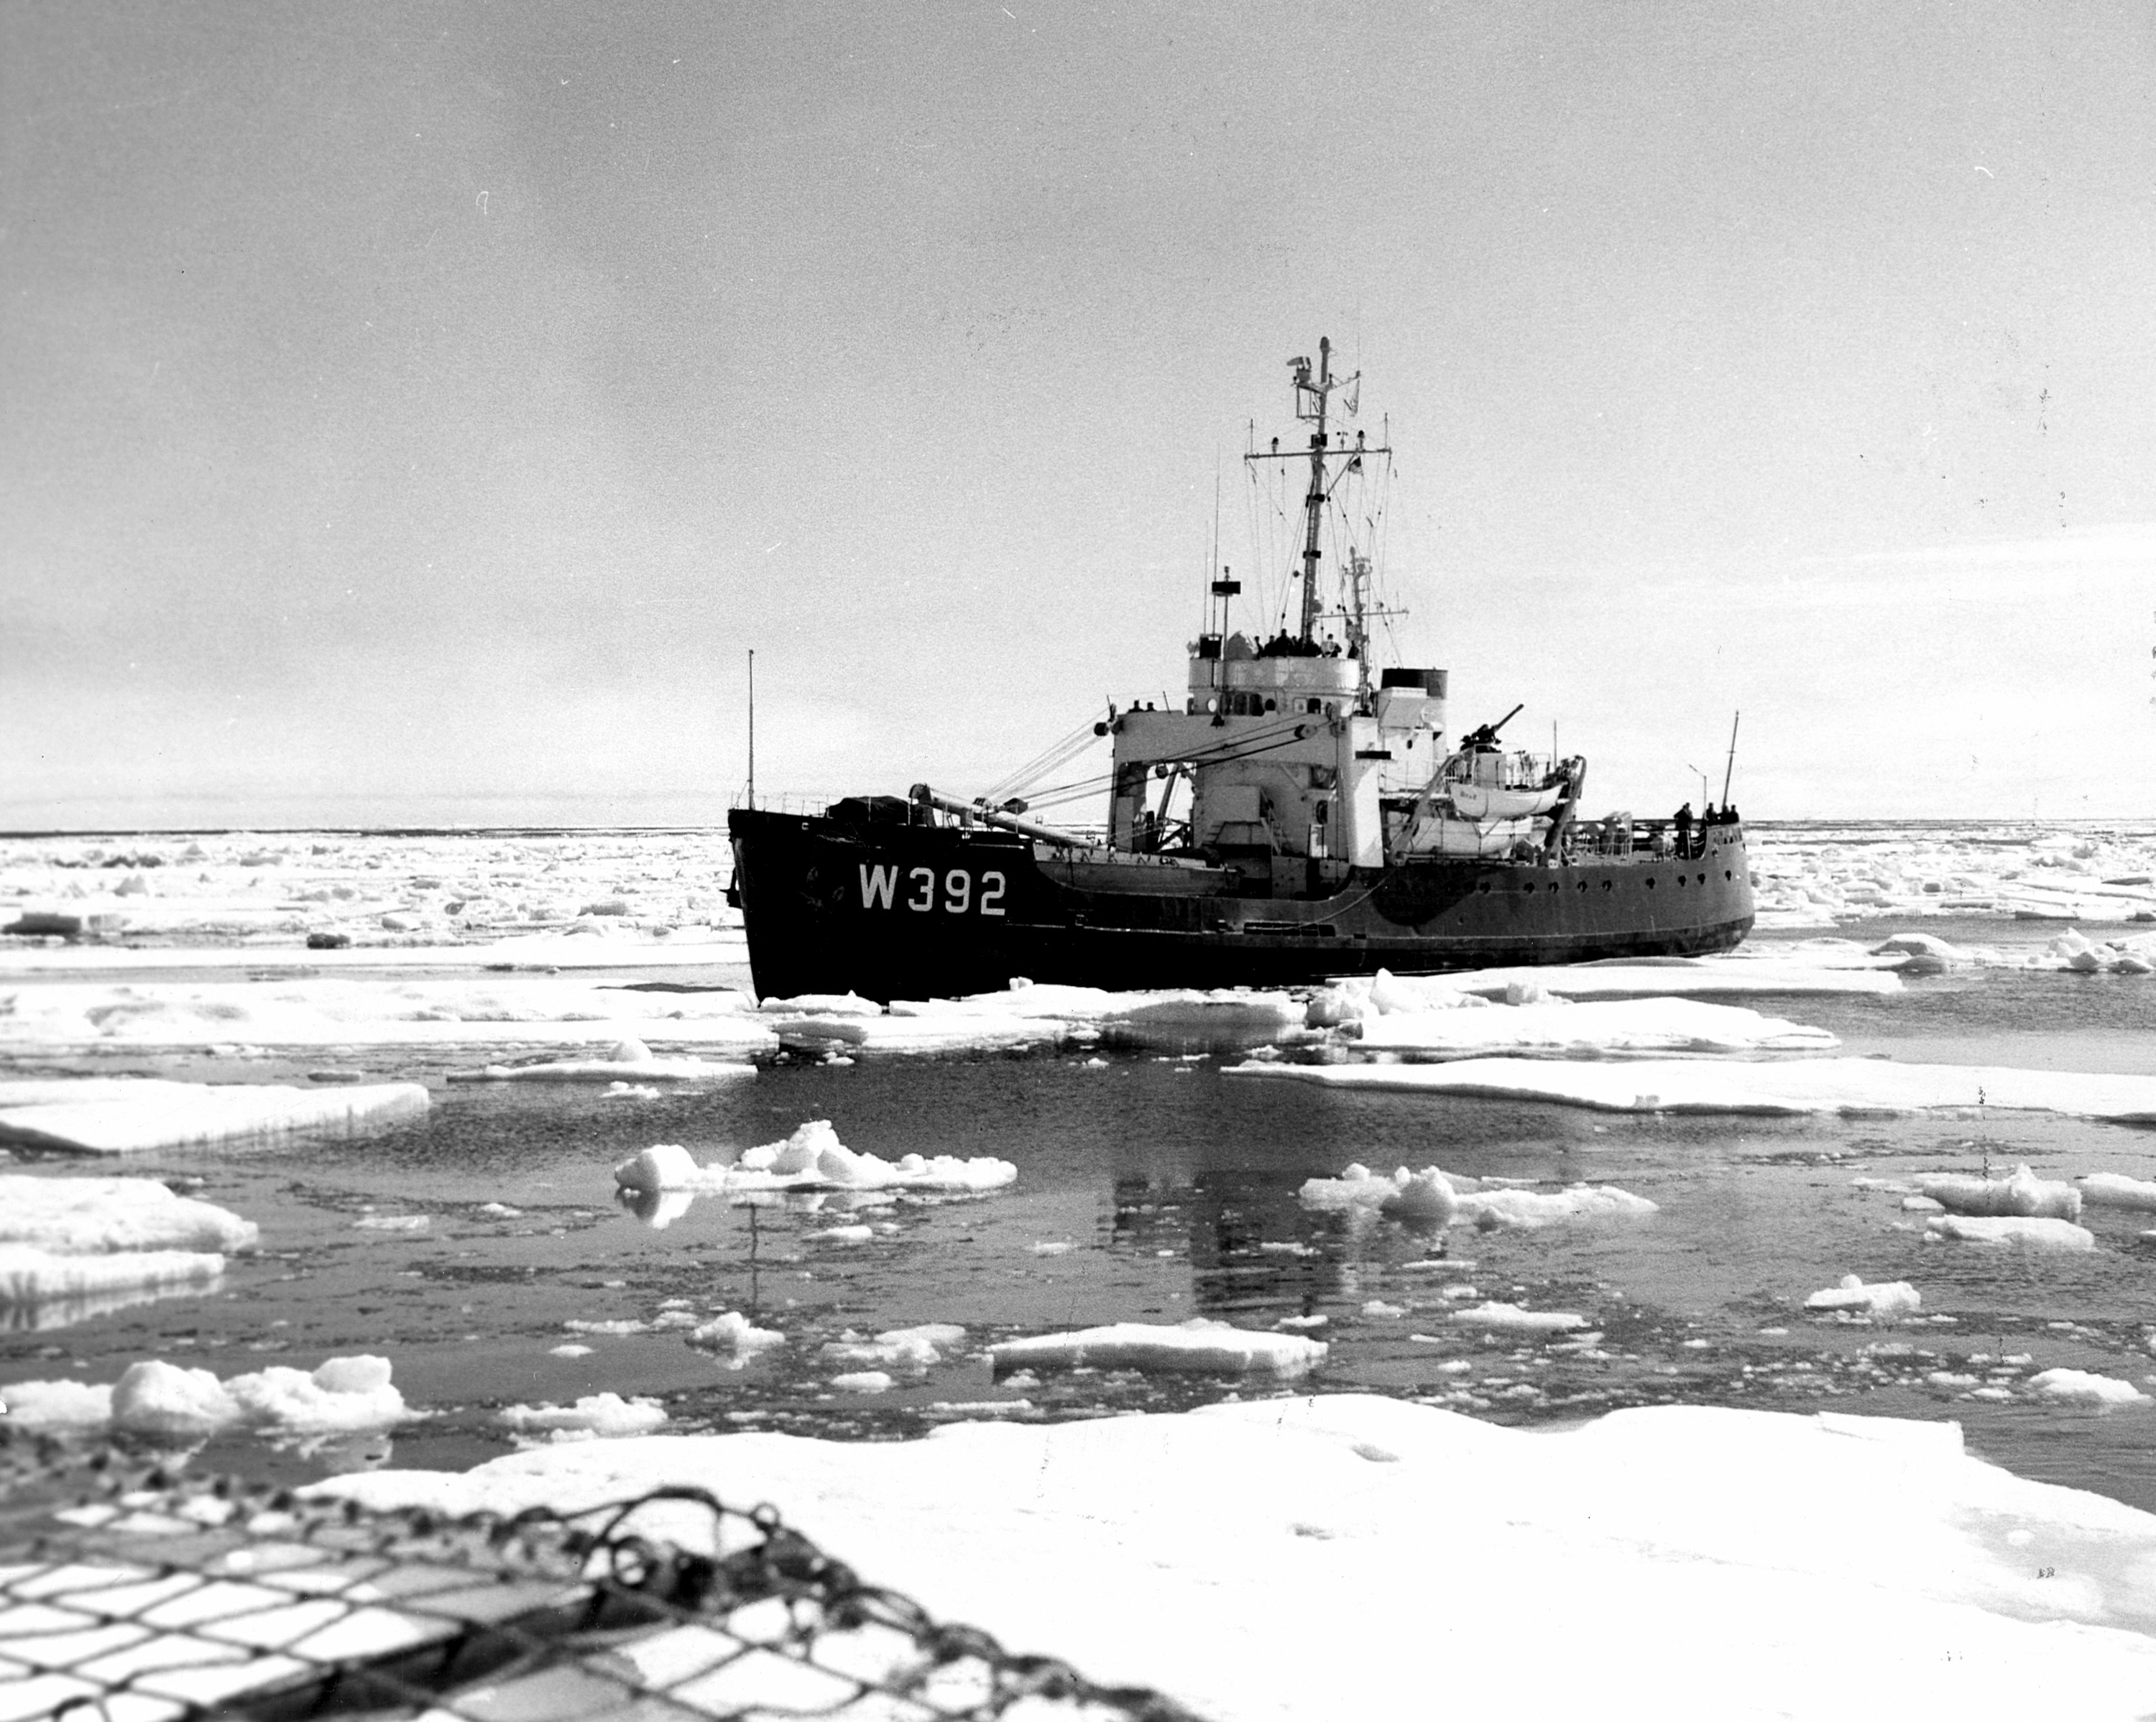 1957 Northwest Passage - CGC Bramble (WLB 392)